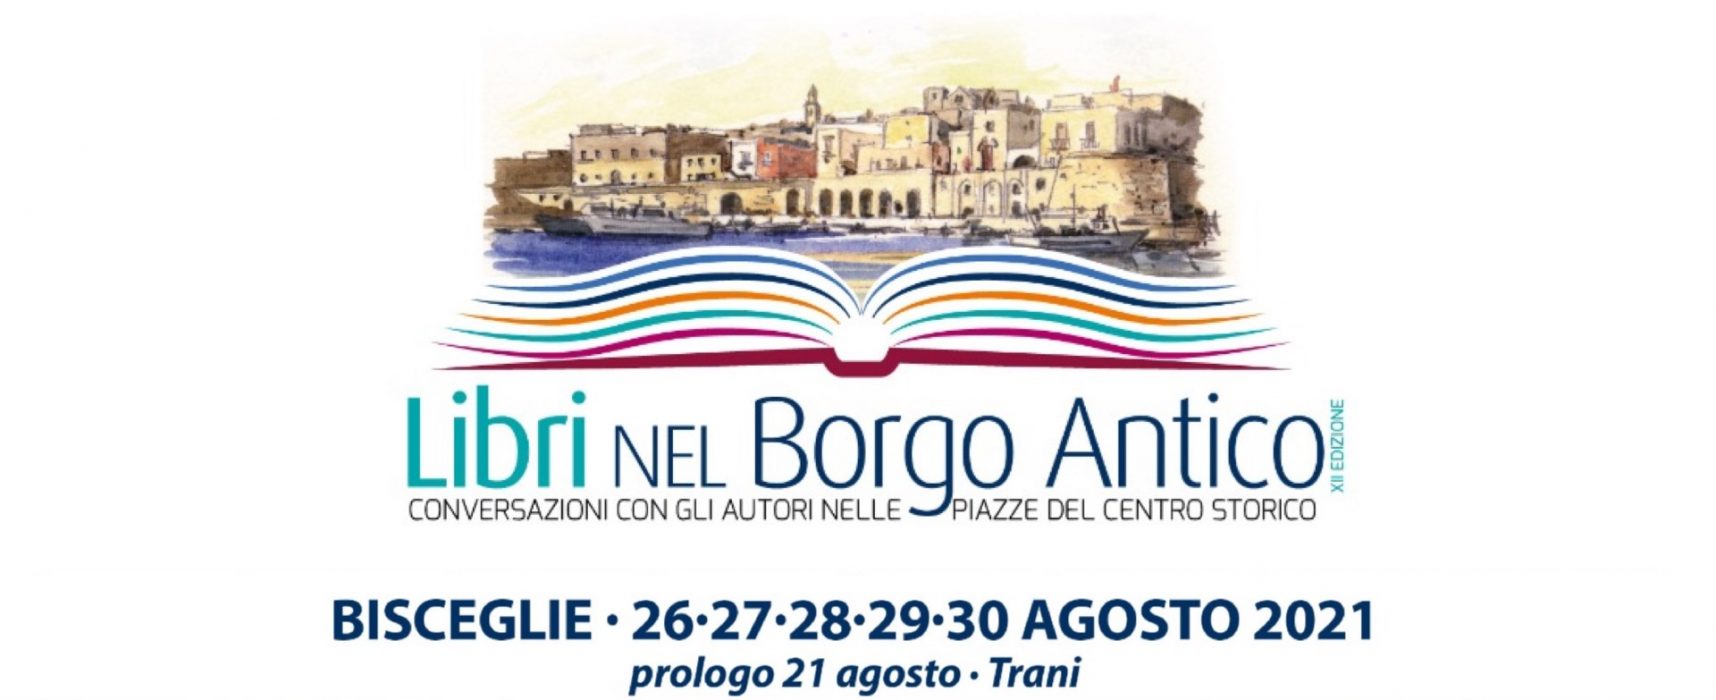 Torna “Libri nel Borgo Antico” dal 26 al 30 agosto: il PROGRAMMA della dodicesima edizione